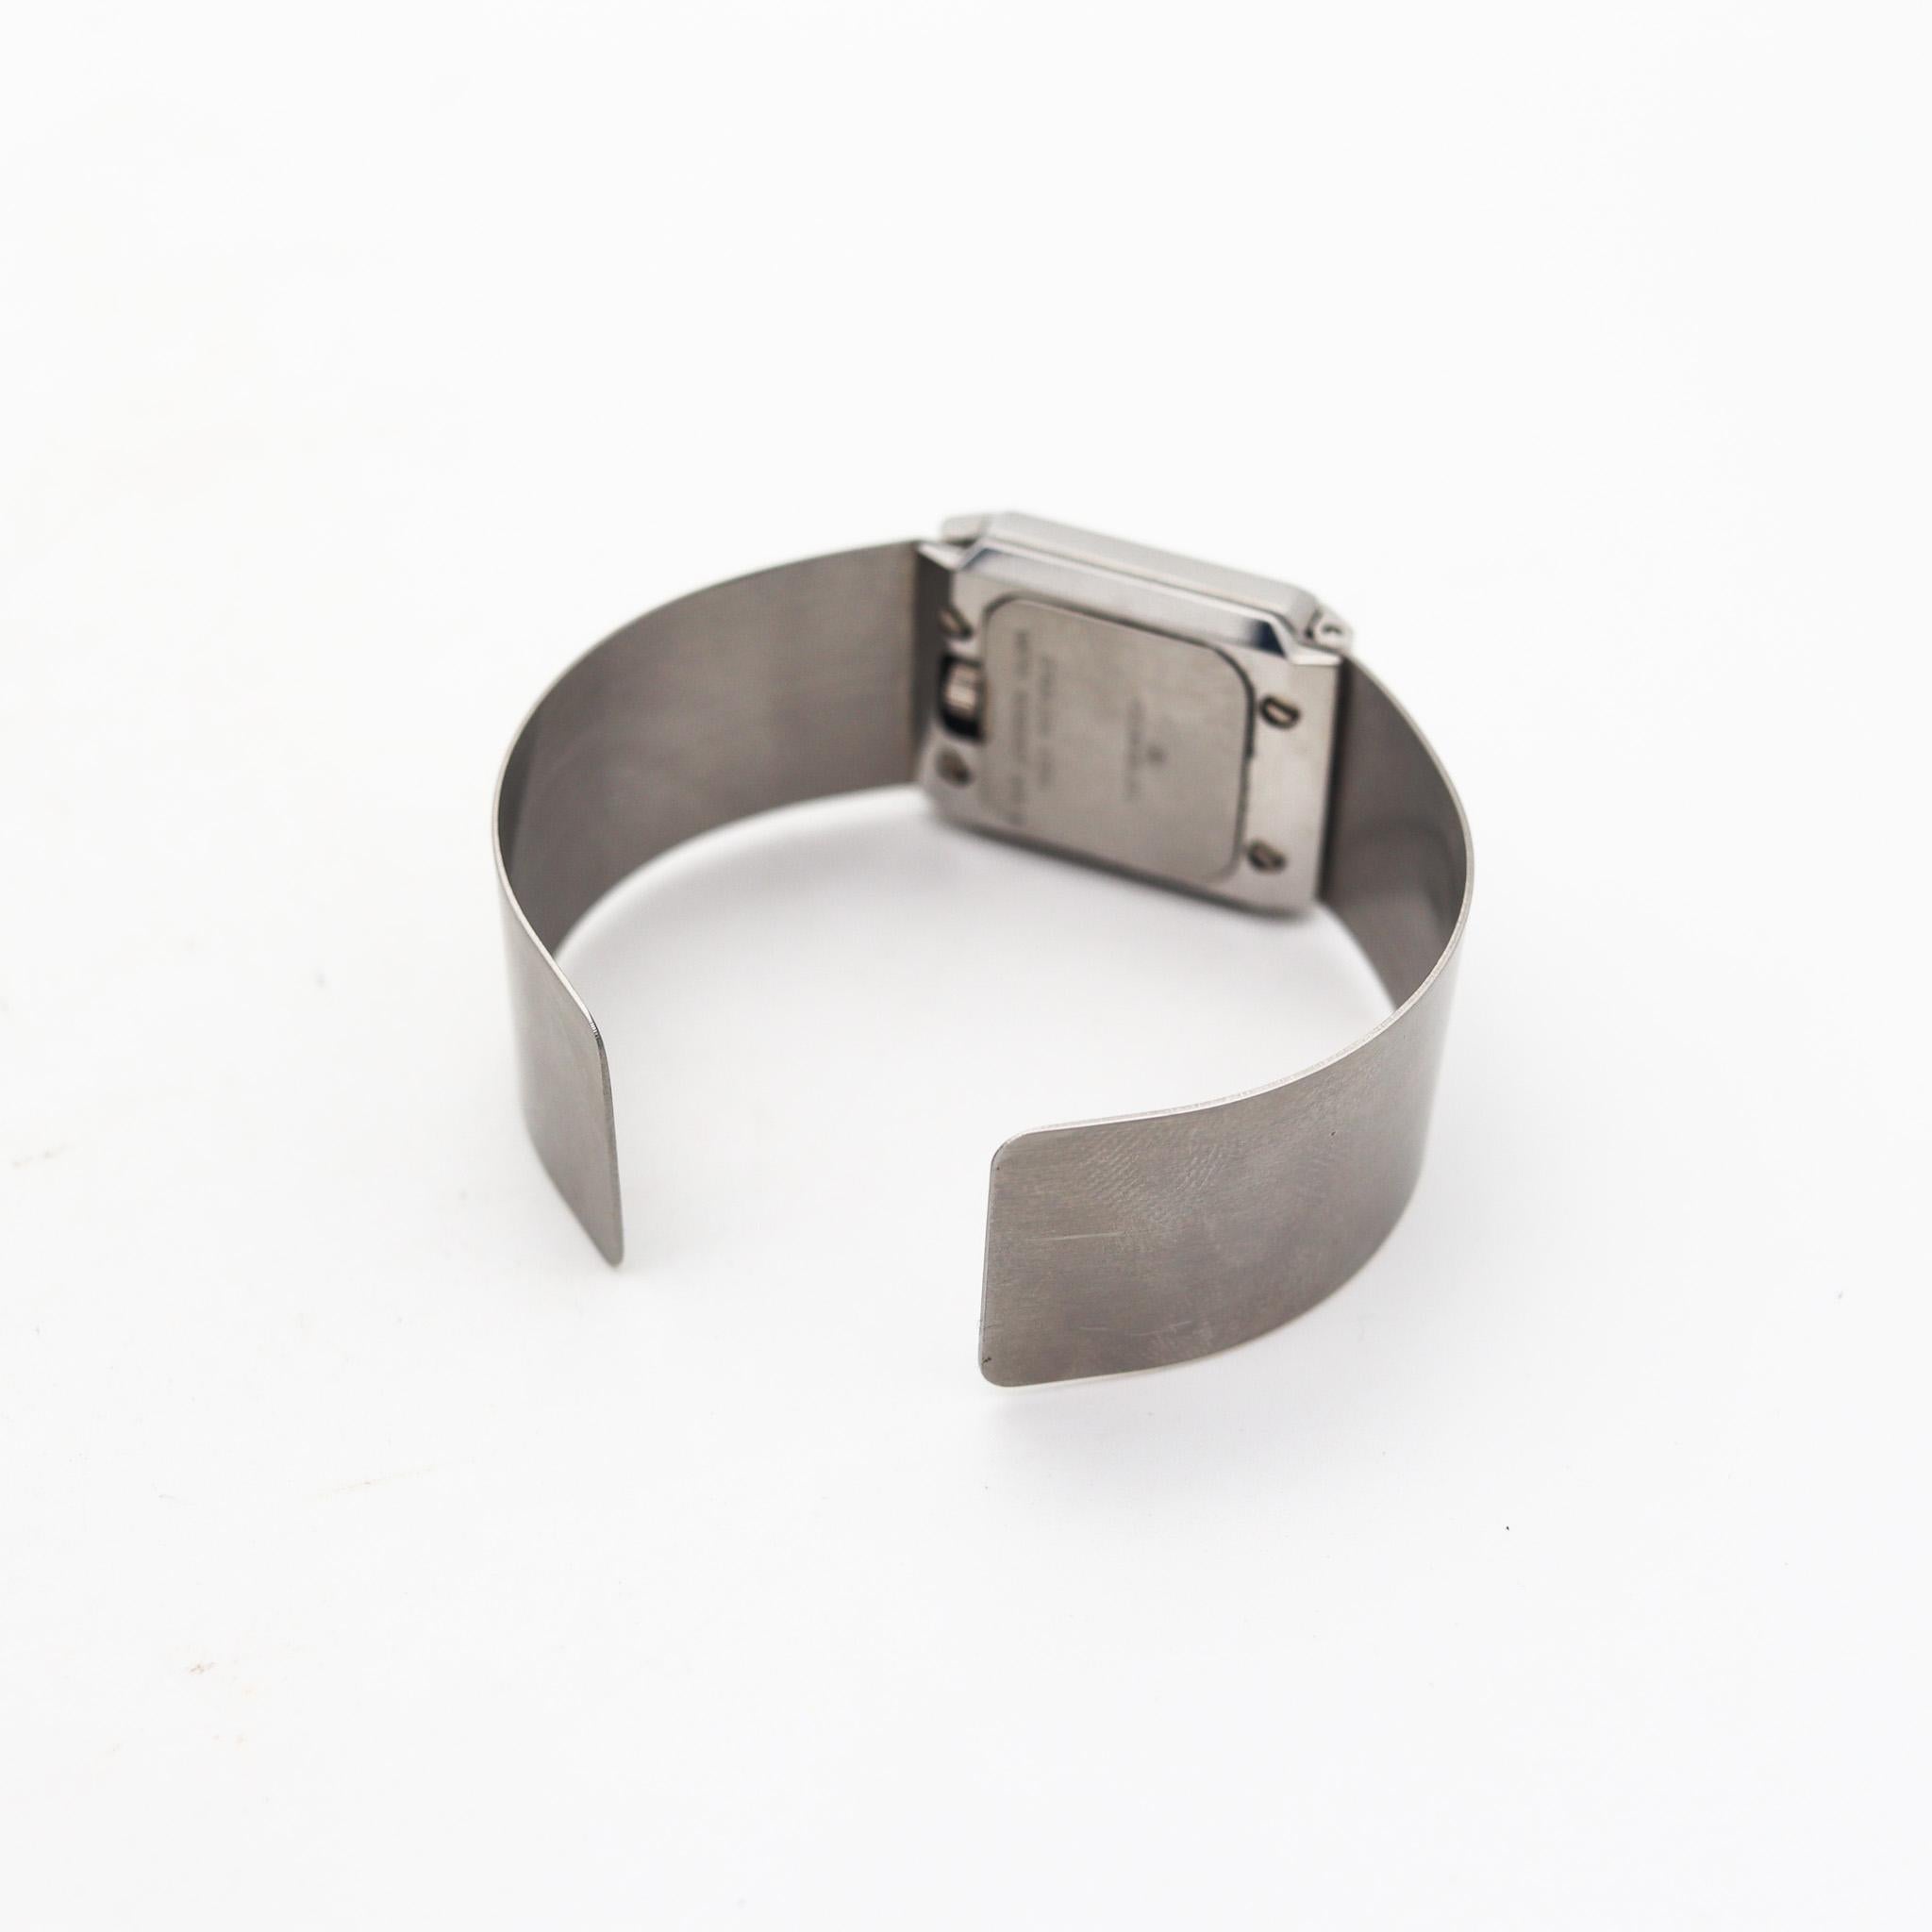 Gubelin Modernist Techno Cuff Bracelet Wrist Watch In Stainless Steel For Sale 1